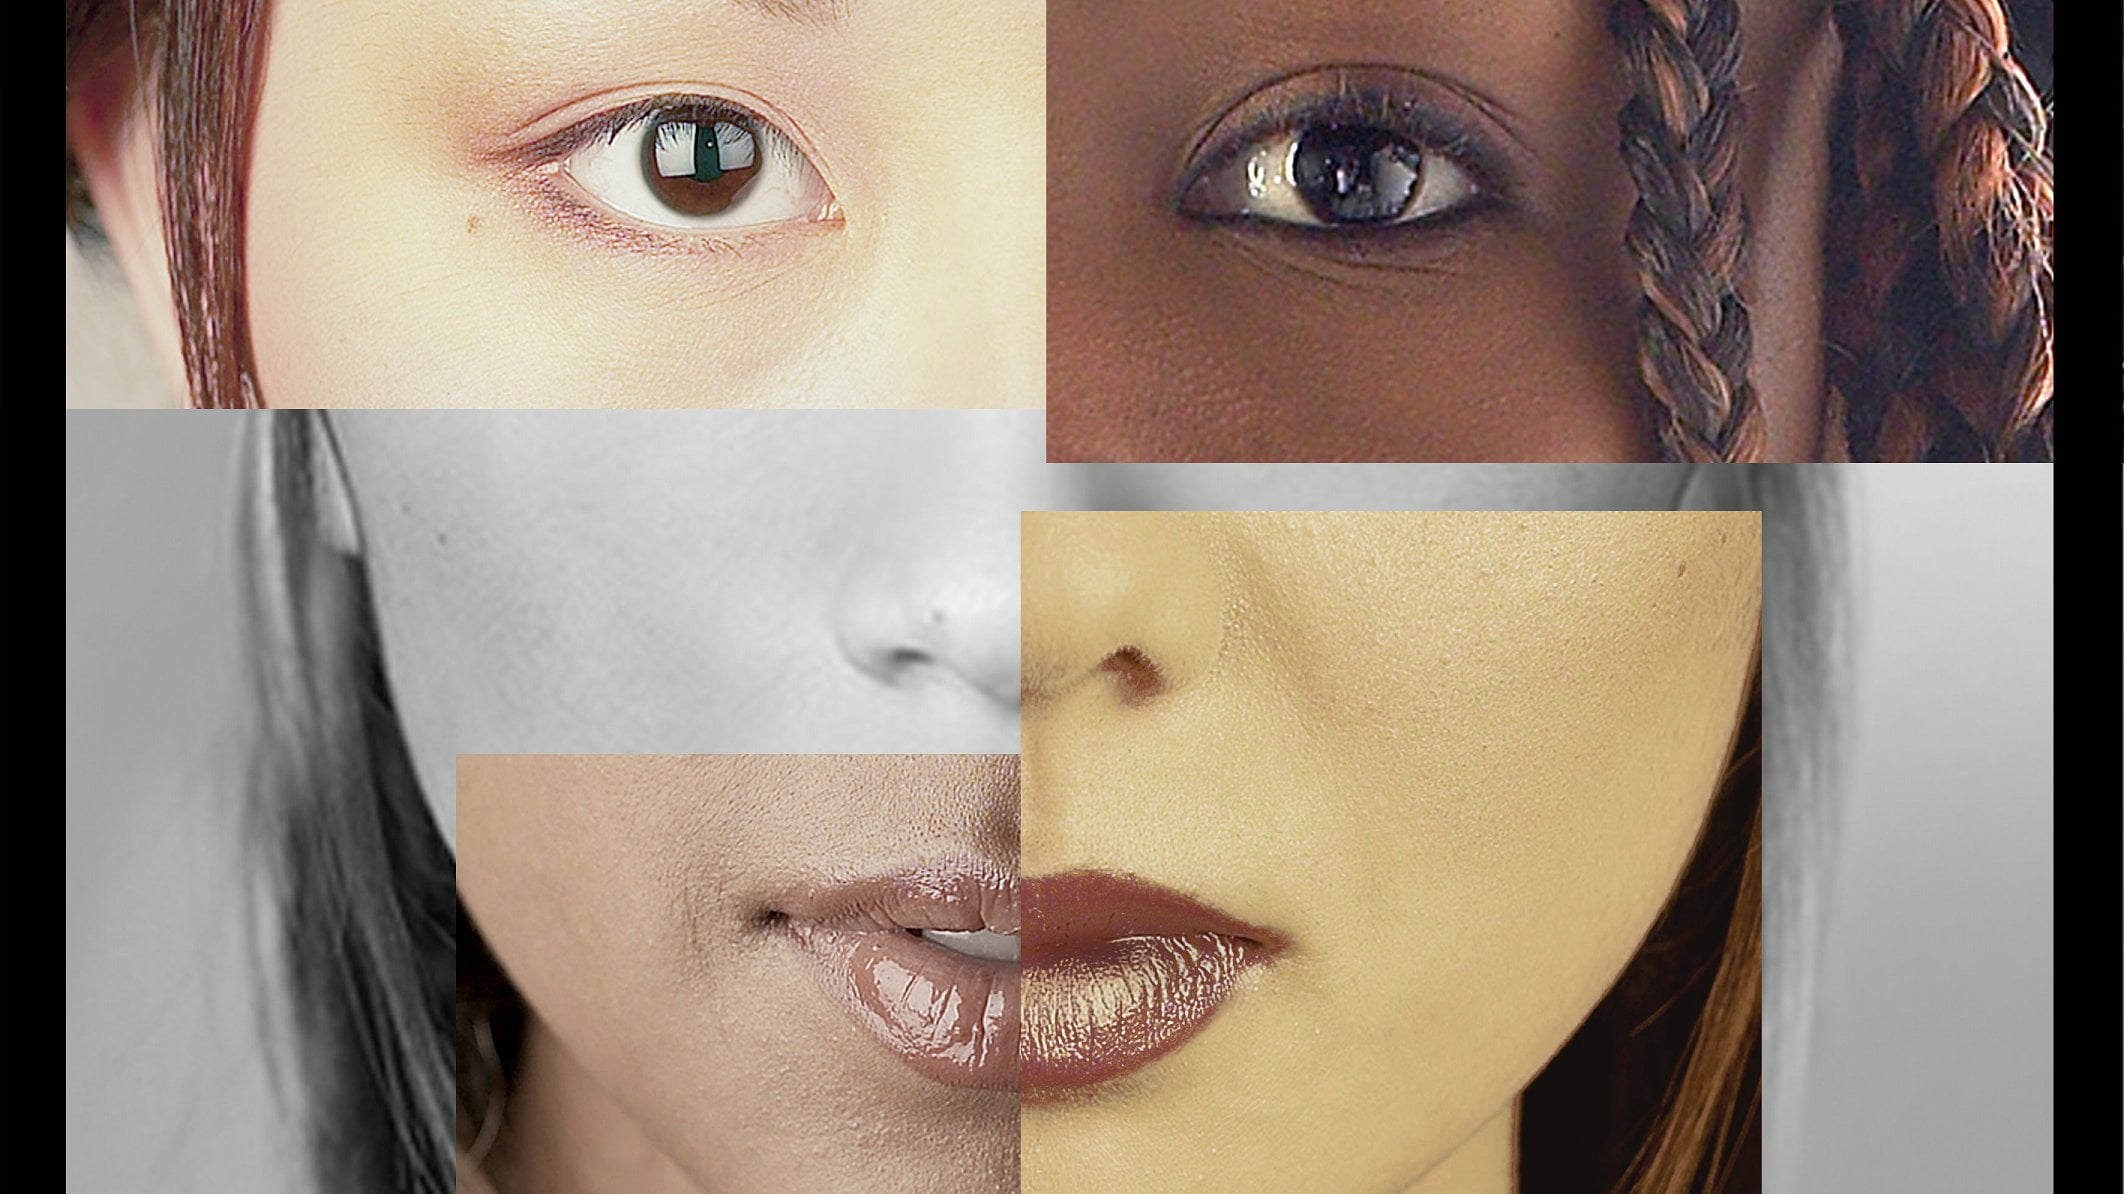 Como determinar minha raça ou etnia?